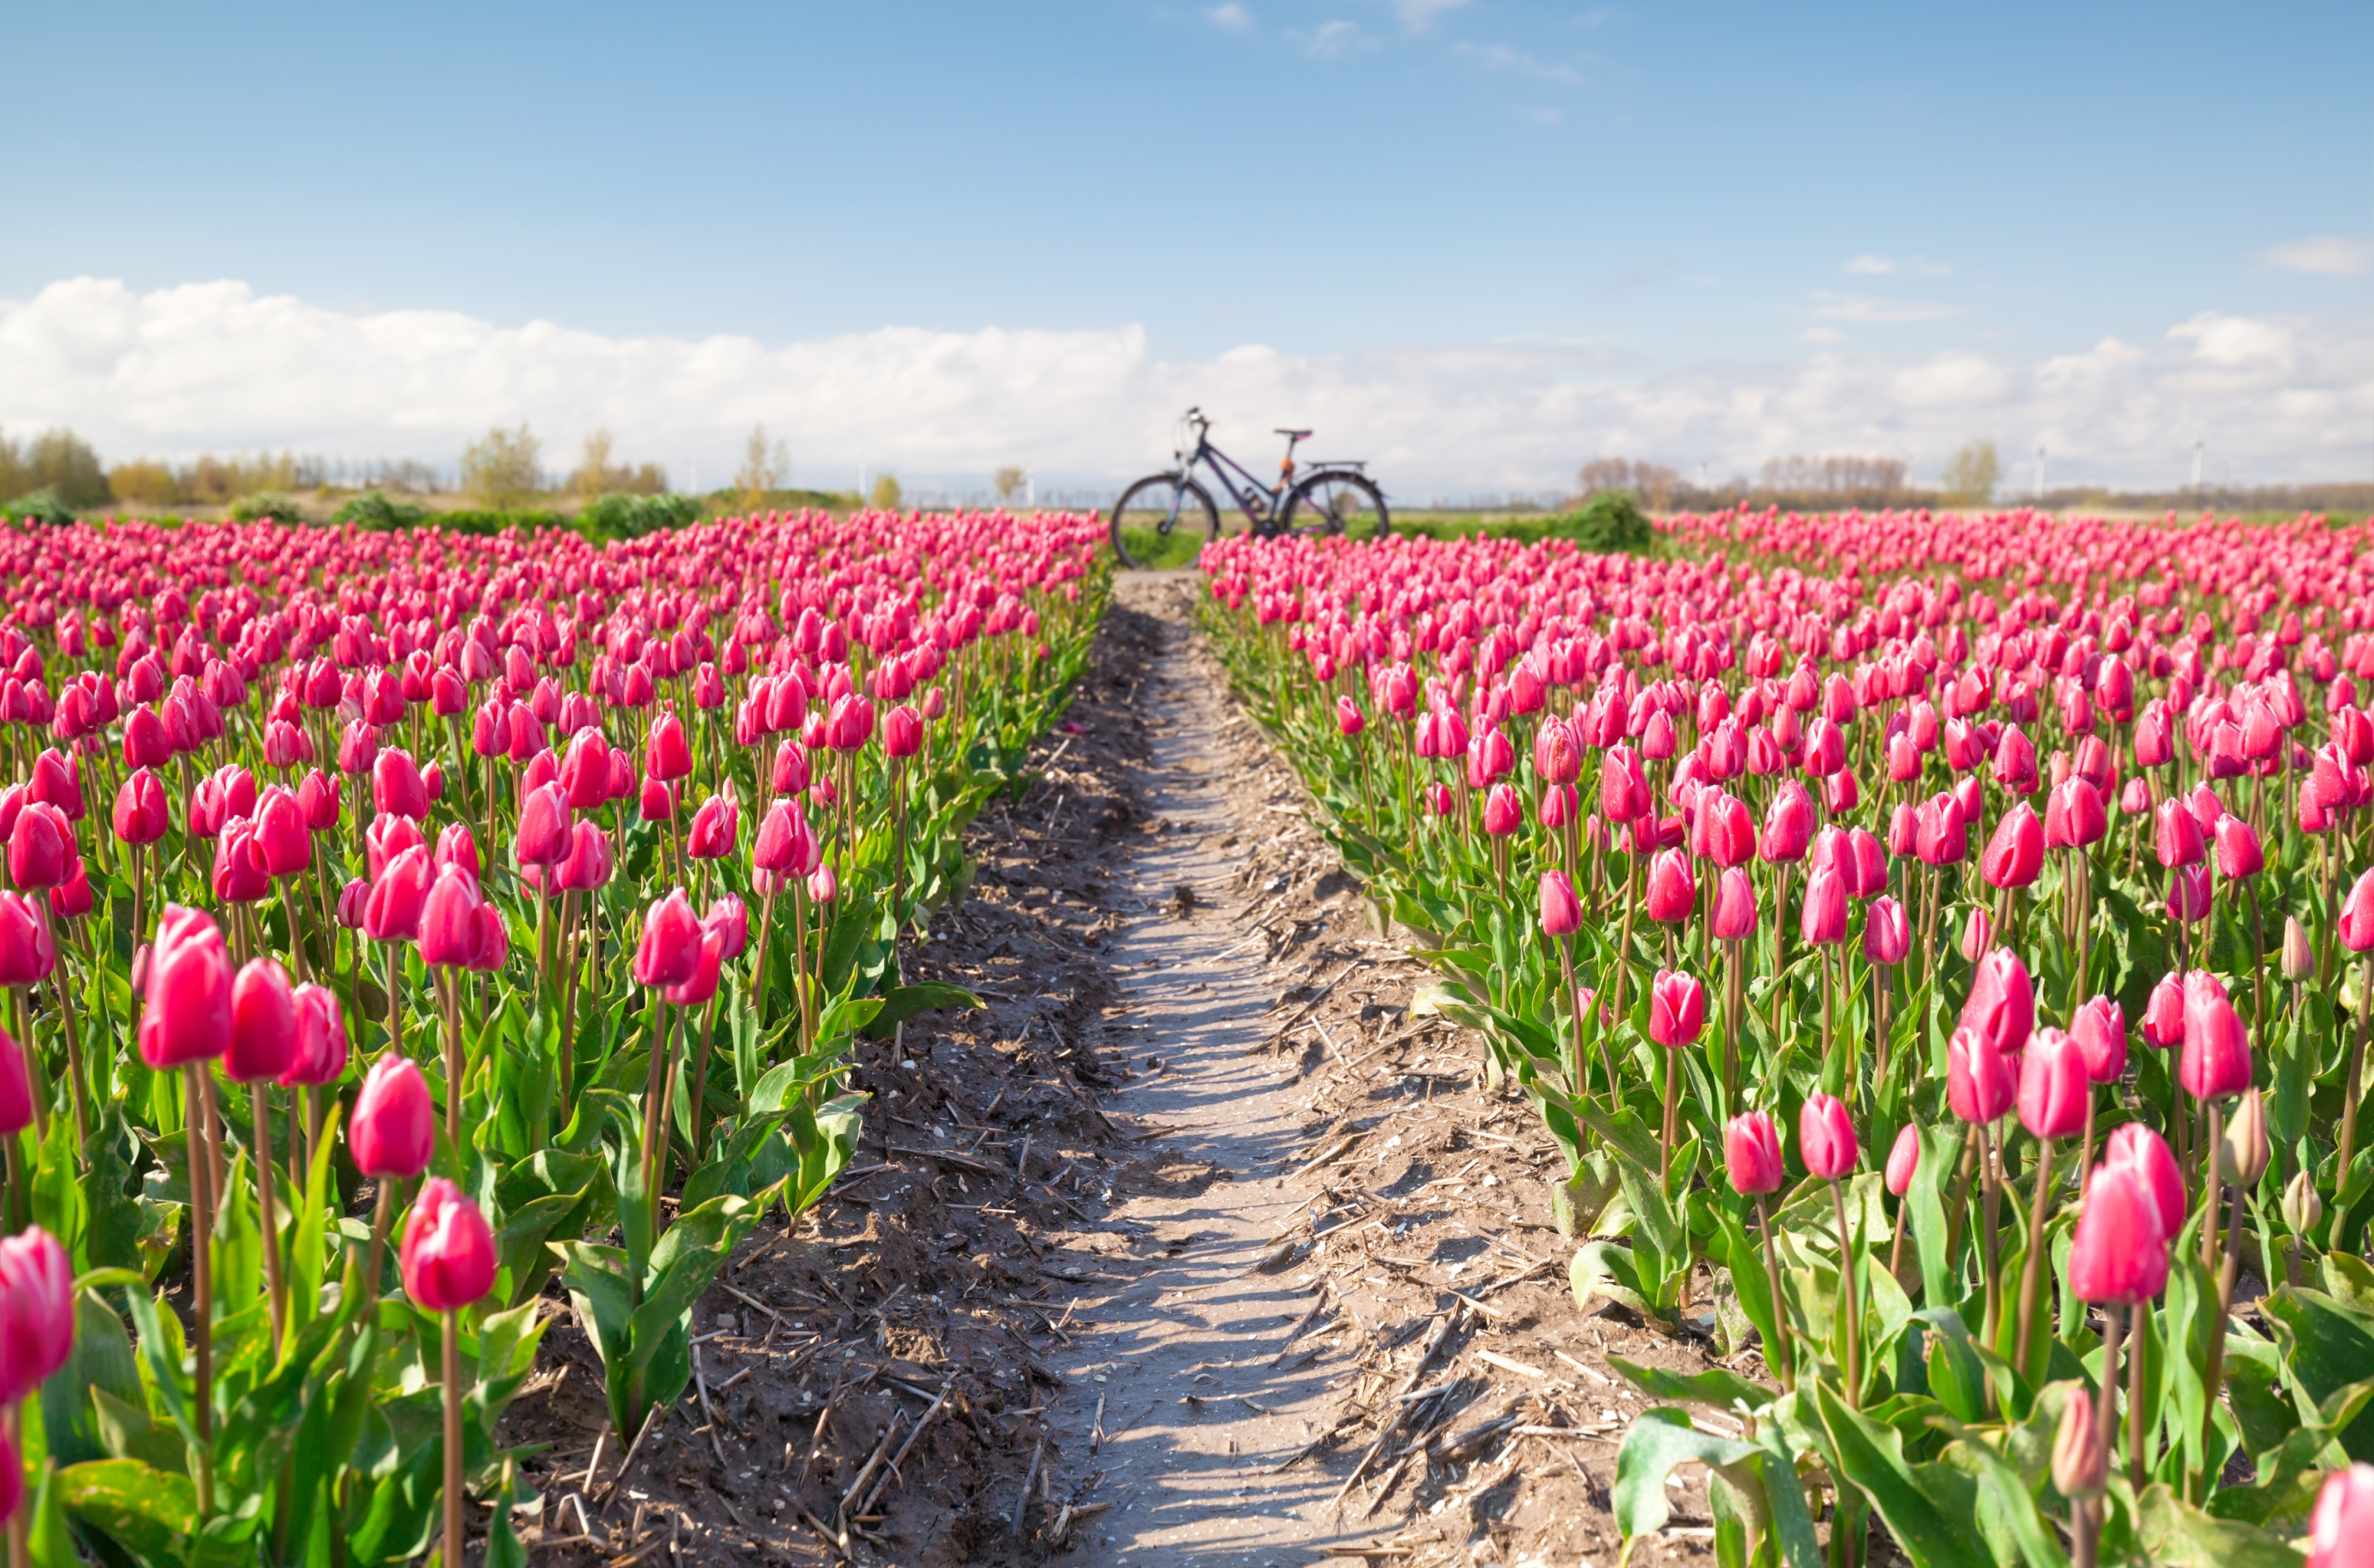 INSTA(NT) TRAVEL: Ne morate putovati sve do Nizozemske. U susjedstvu se nalazi predivna livada tulipana